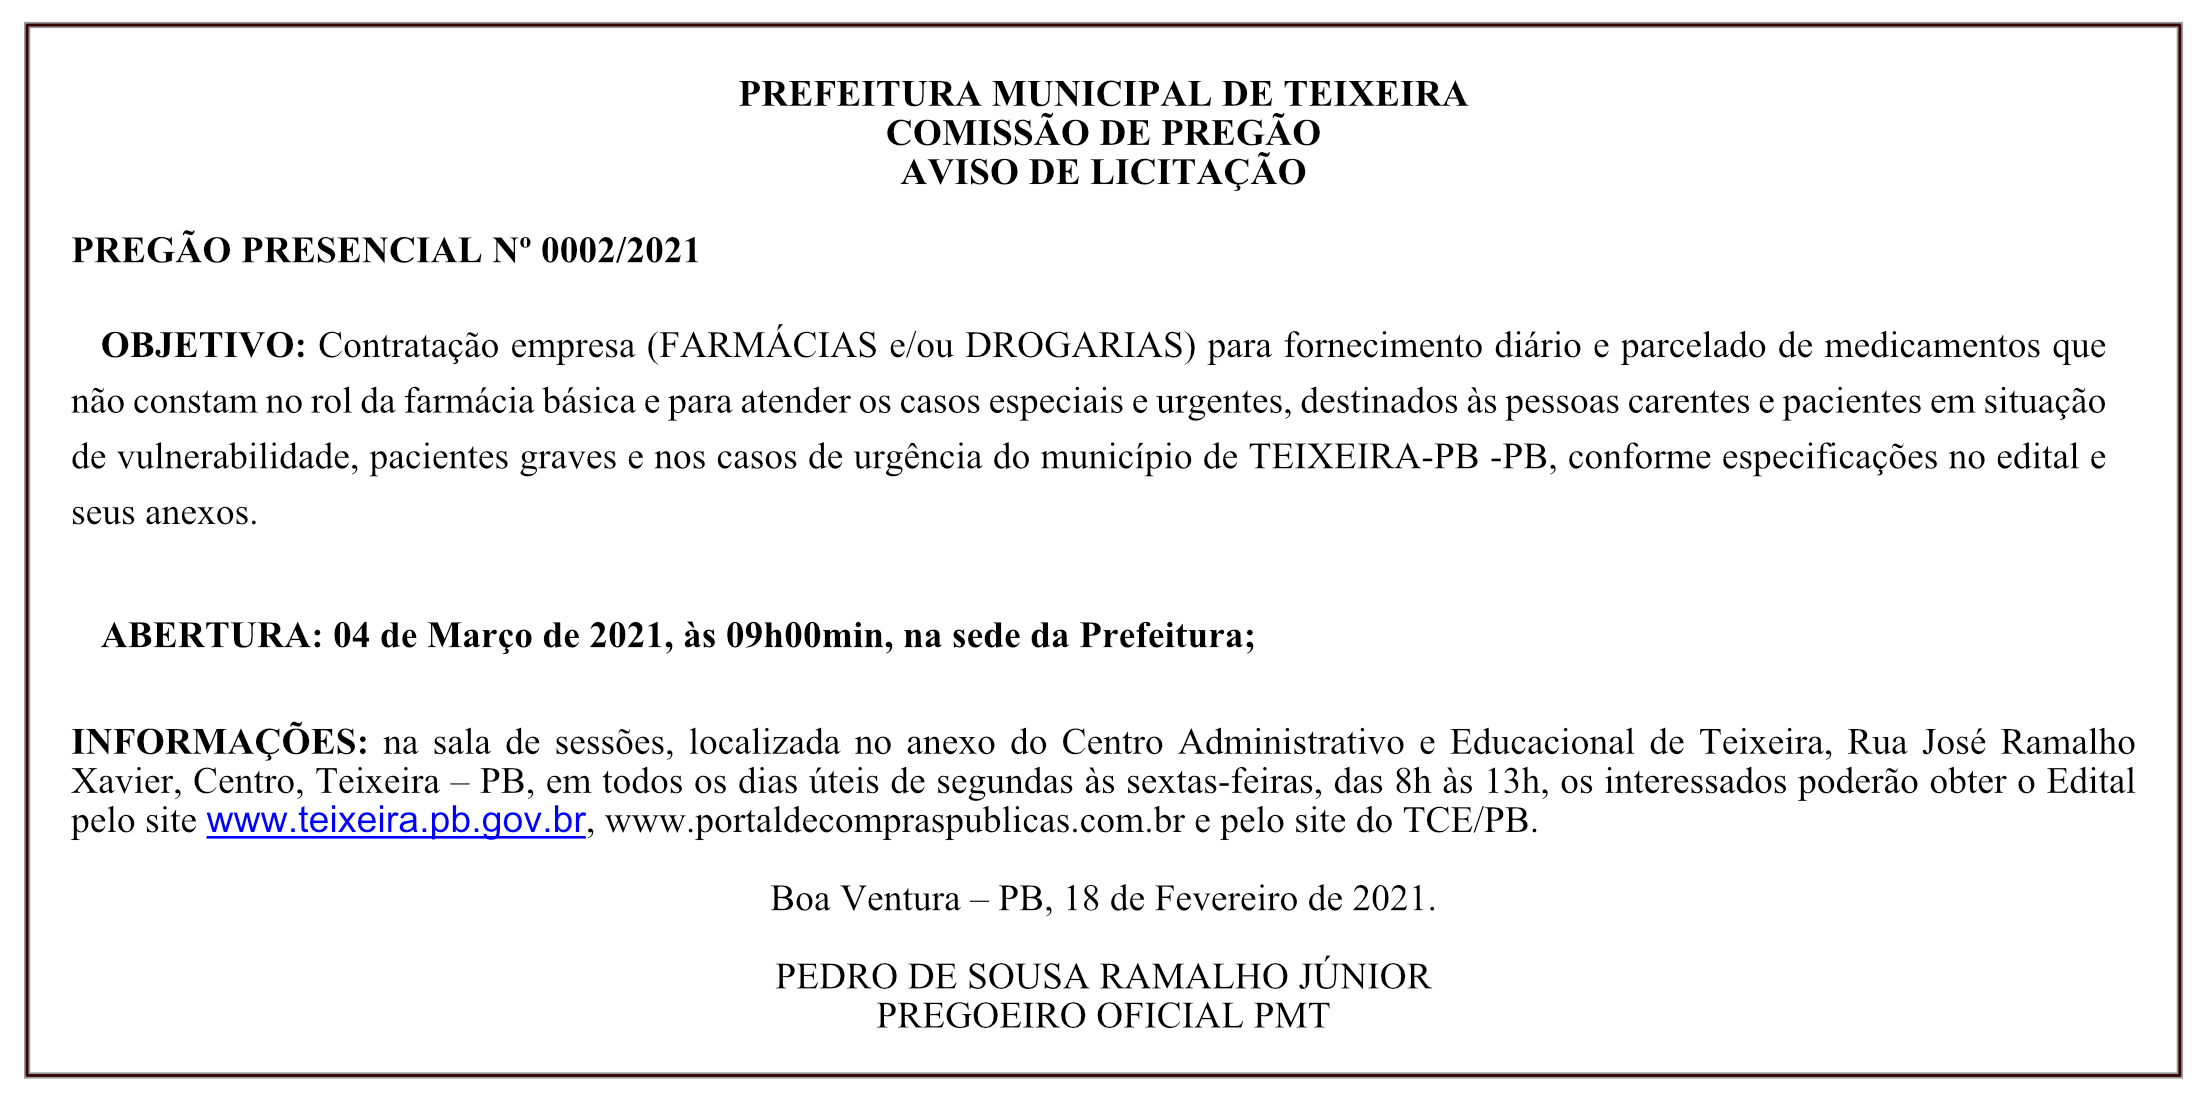 PREFEITURA MUNICIPAL DE TEIXEIRA – COMISSÃO DE PREGÃO – AVISO DE LICITAÇÃO – PREGÃO PRESENCIAL Nº 0002/2021